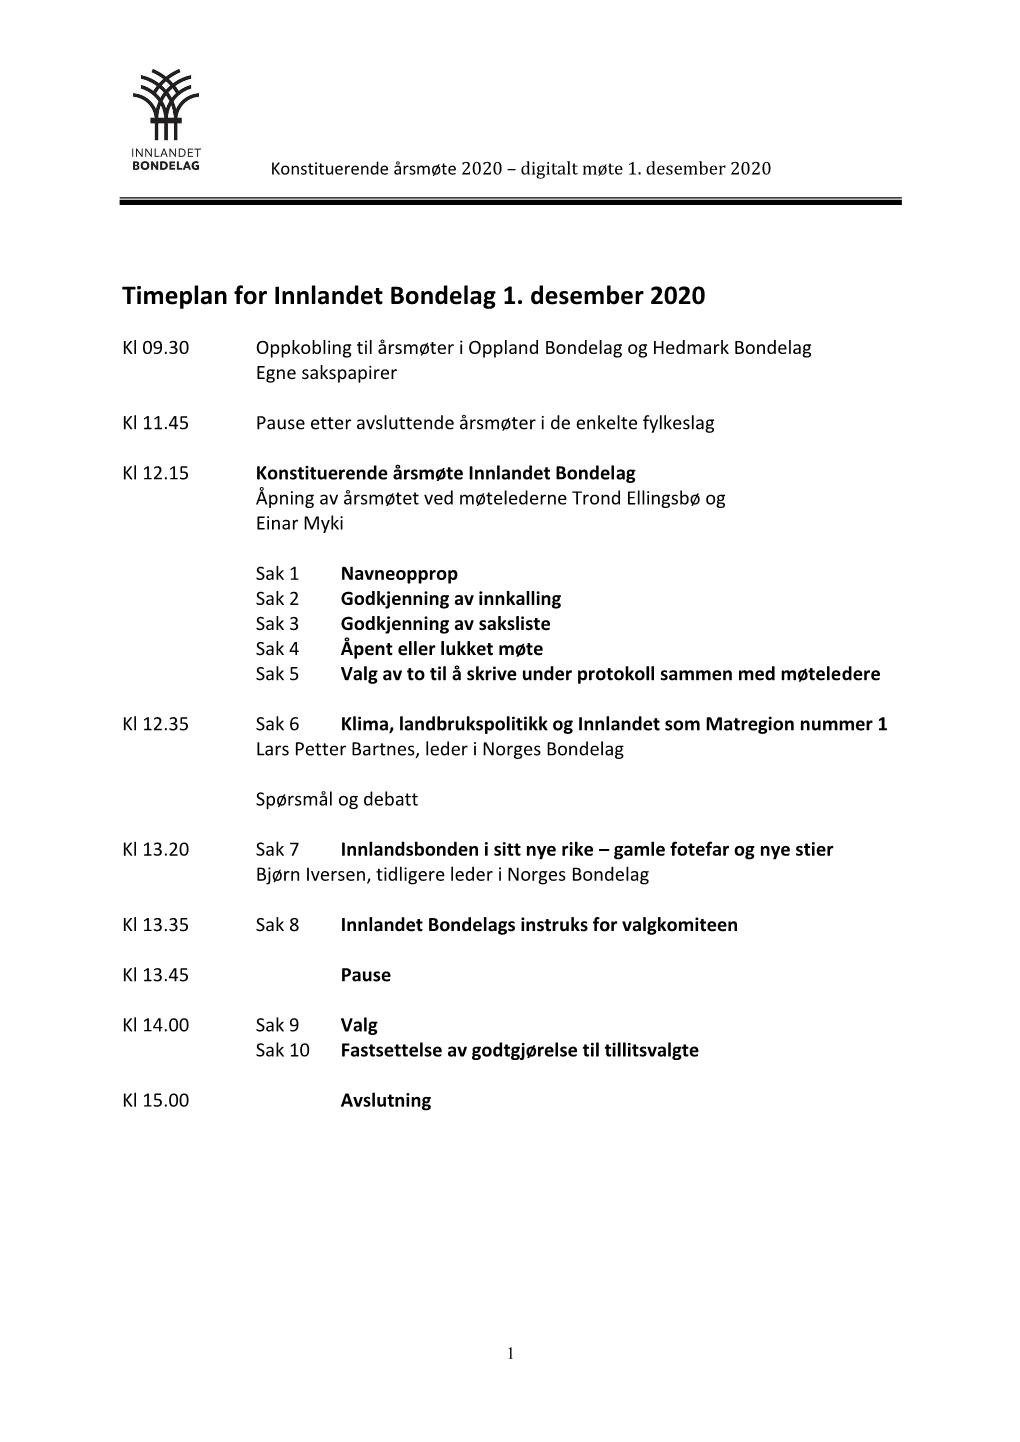 Timeplan for Innlandet Bondelag 1. Desember 2020